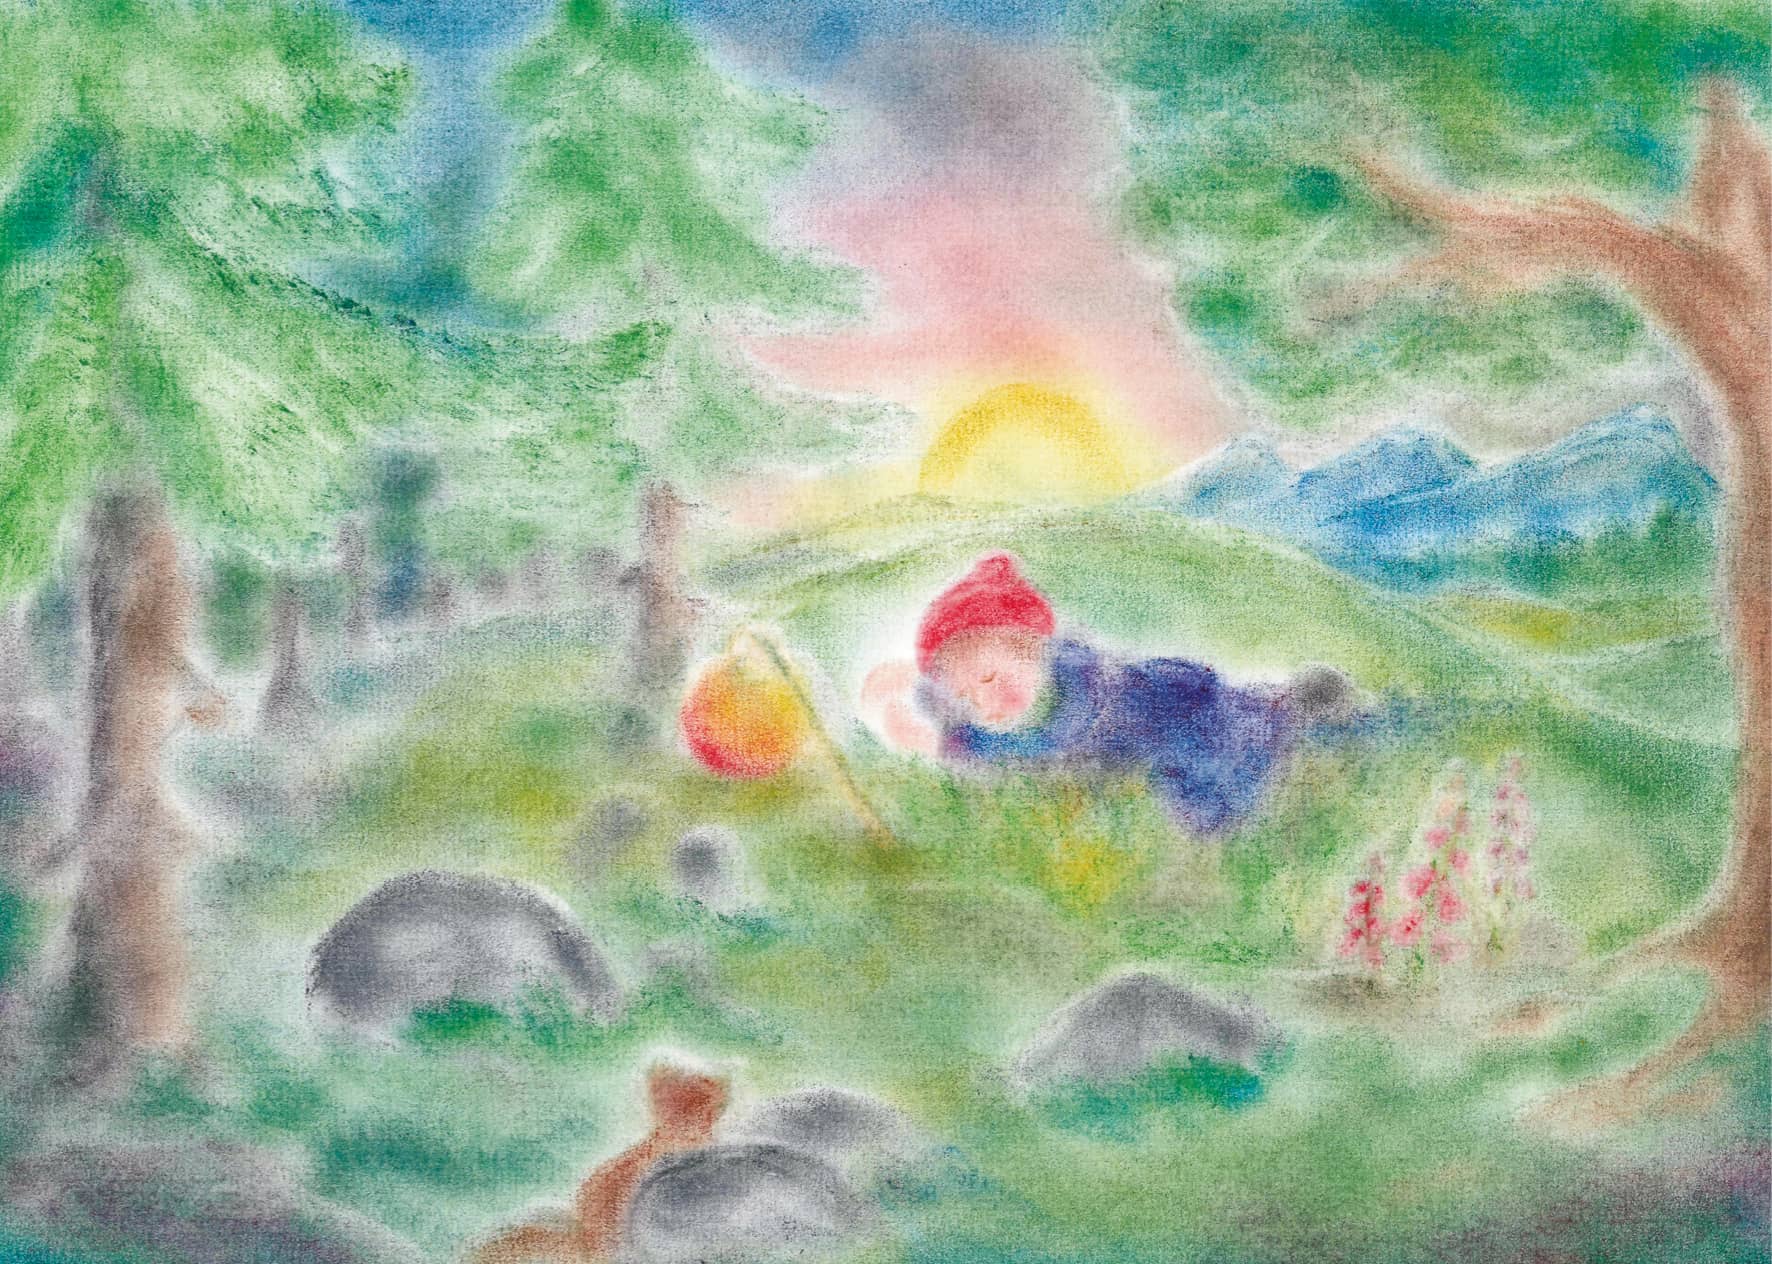 Seccorell Postkarte "Schlafendes Laternenkind" zeigt ein Kind im Traumland, umgeben von einer friedvollen Naturkulisse, gemalt mit Seccorell-Farben.